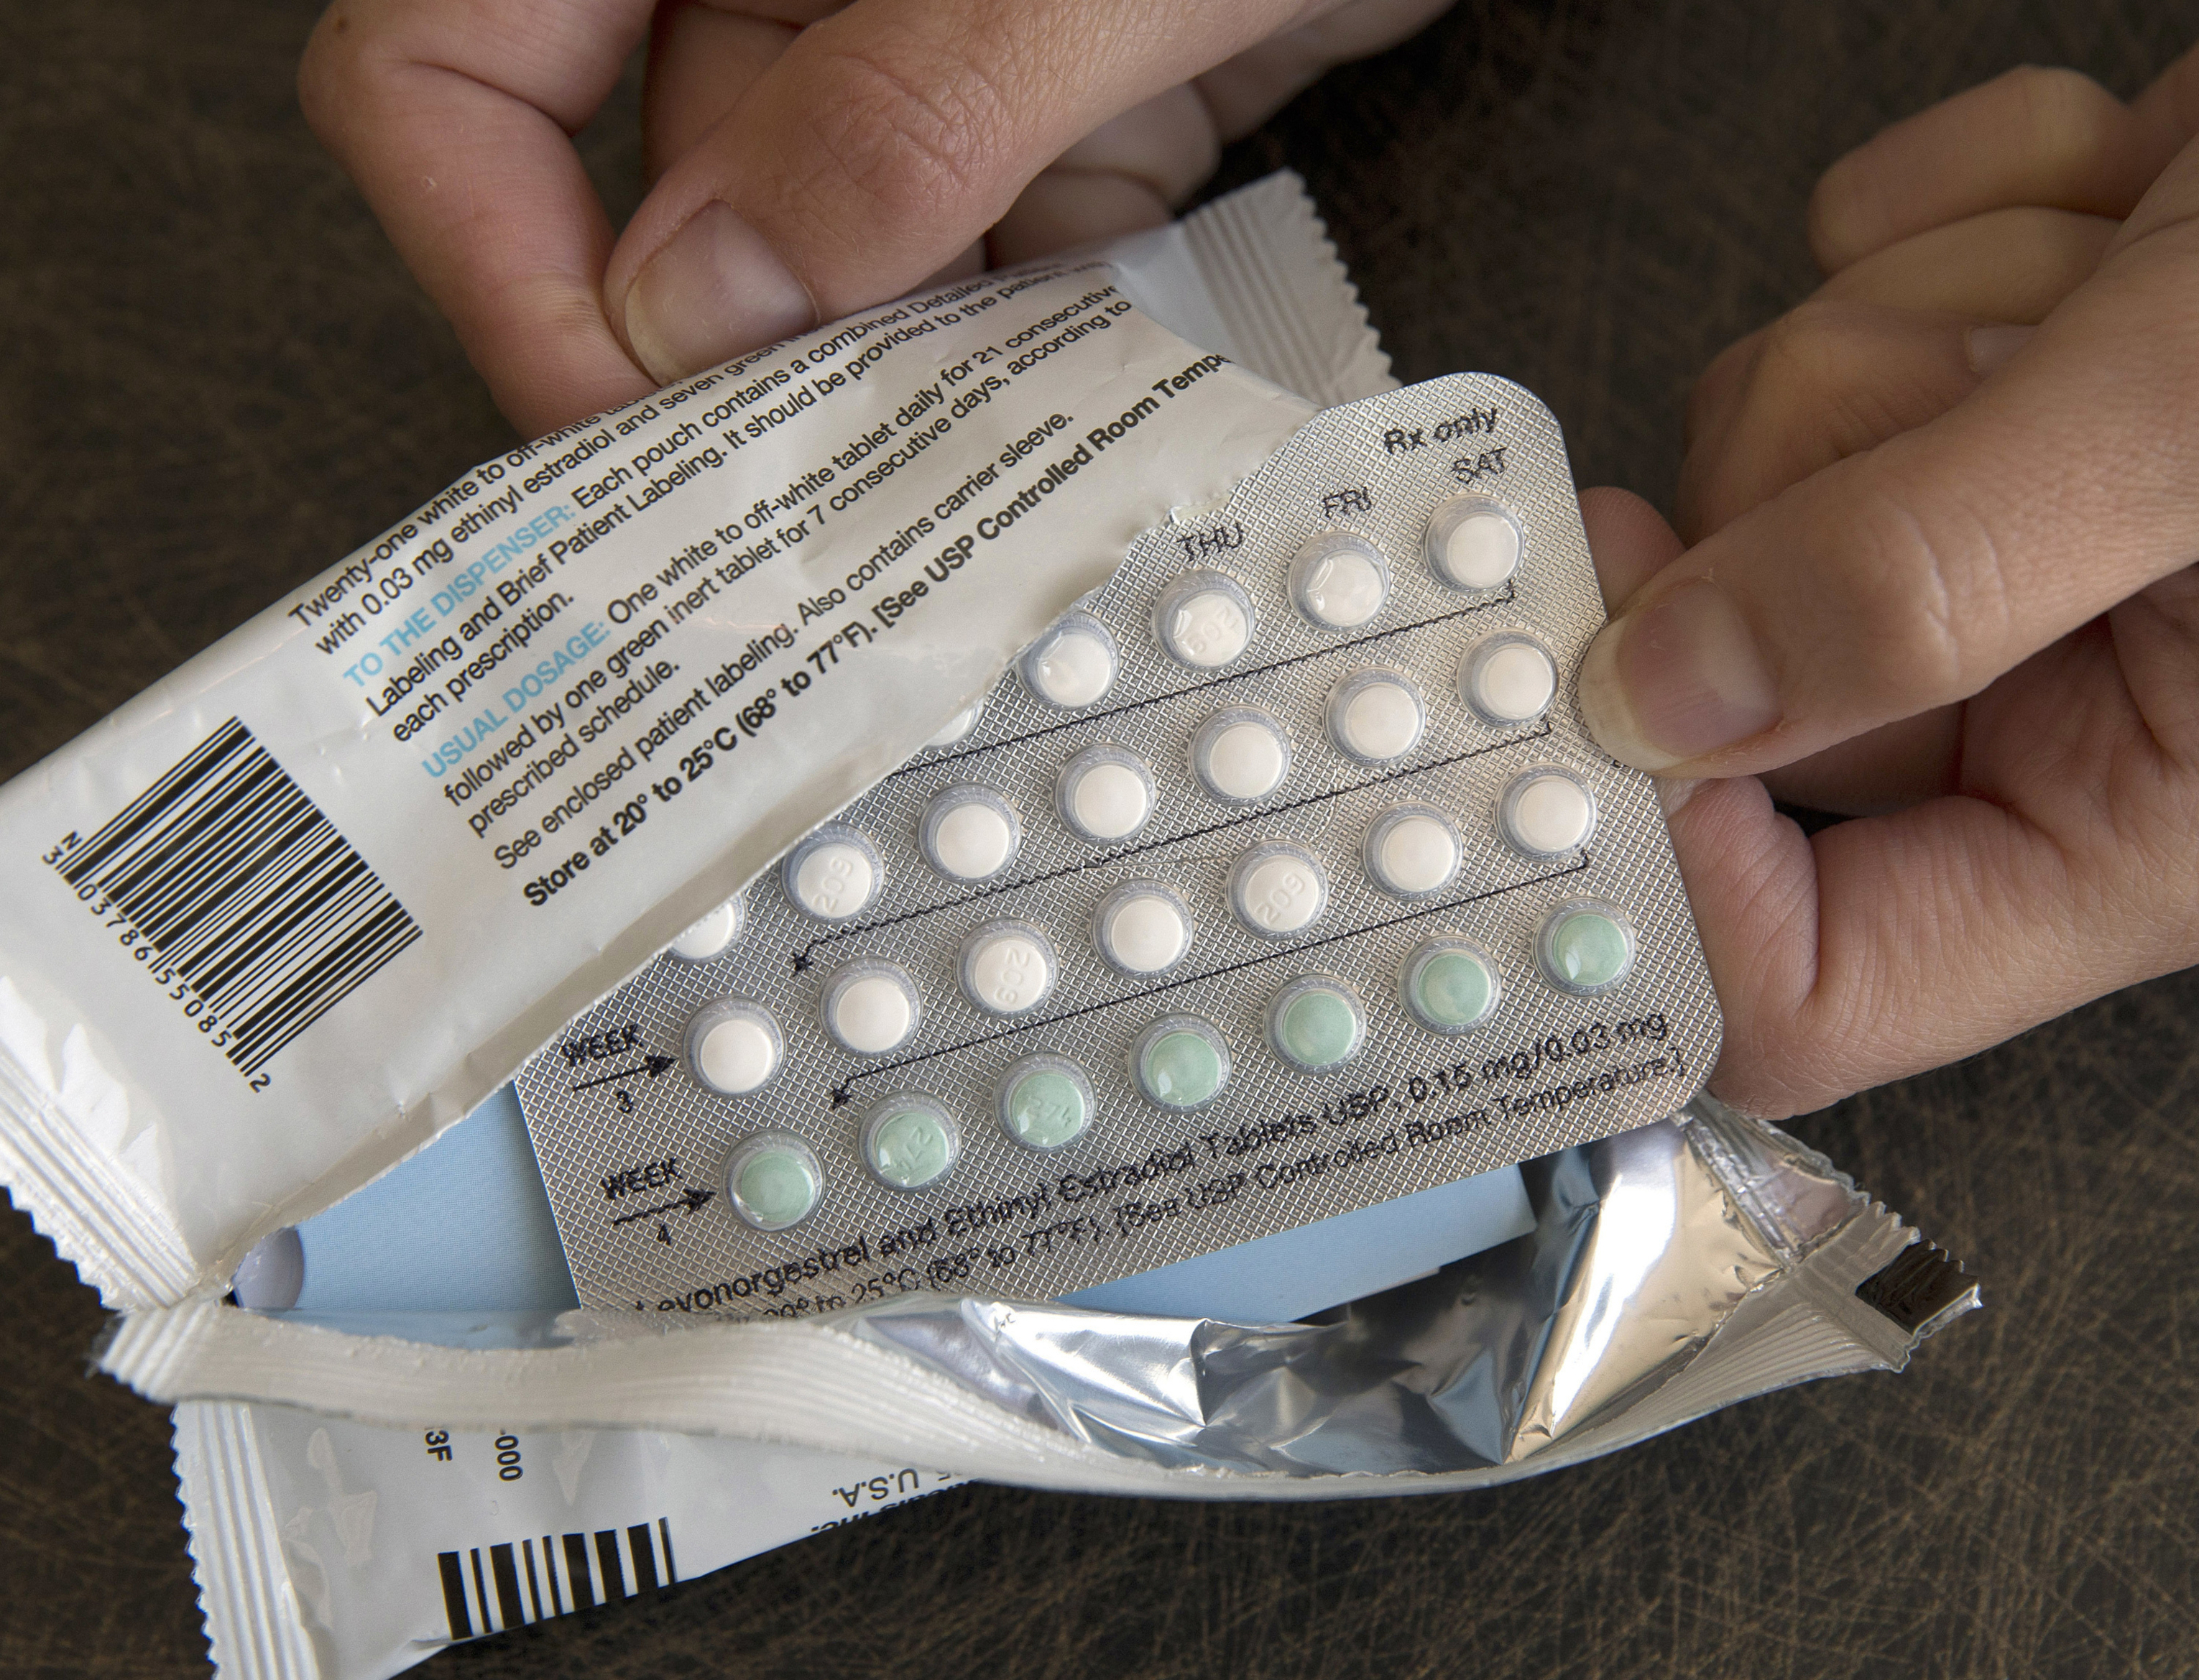 Descubrir 48+ imagen como comprar pastillas anticonceptivas sin receta